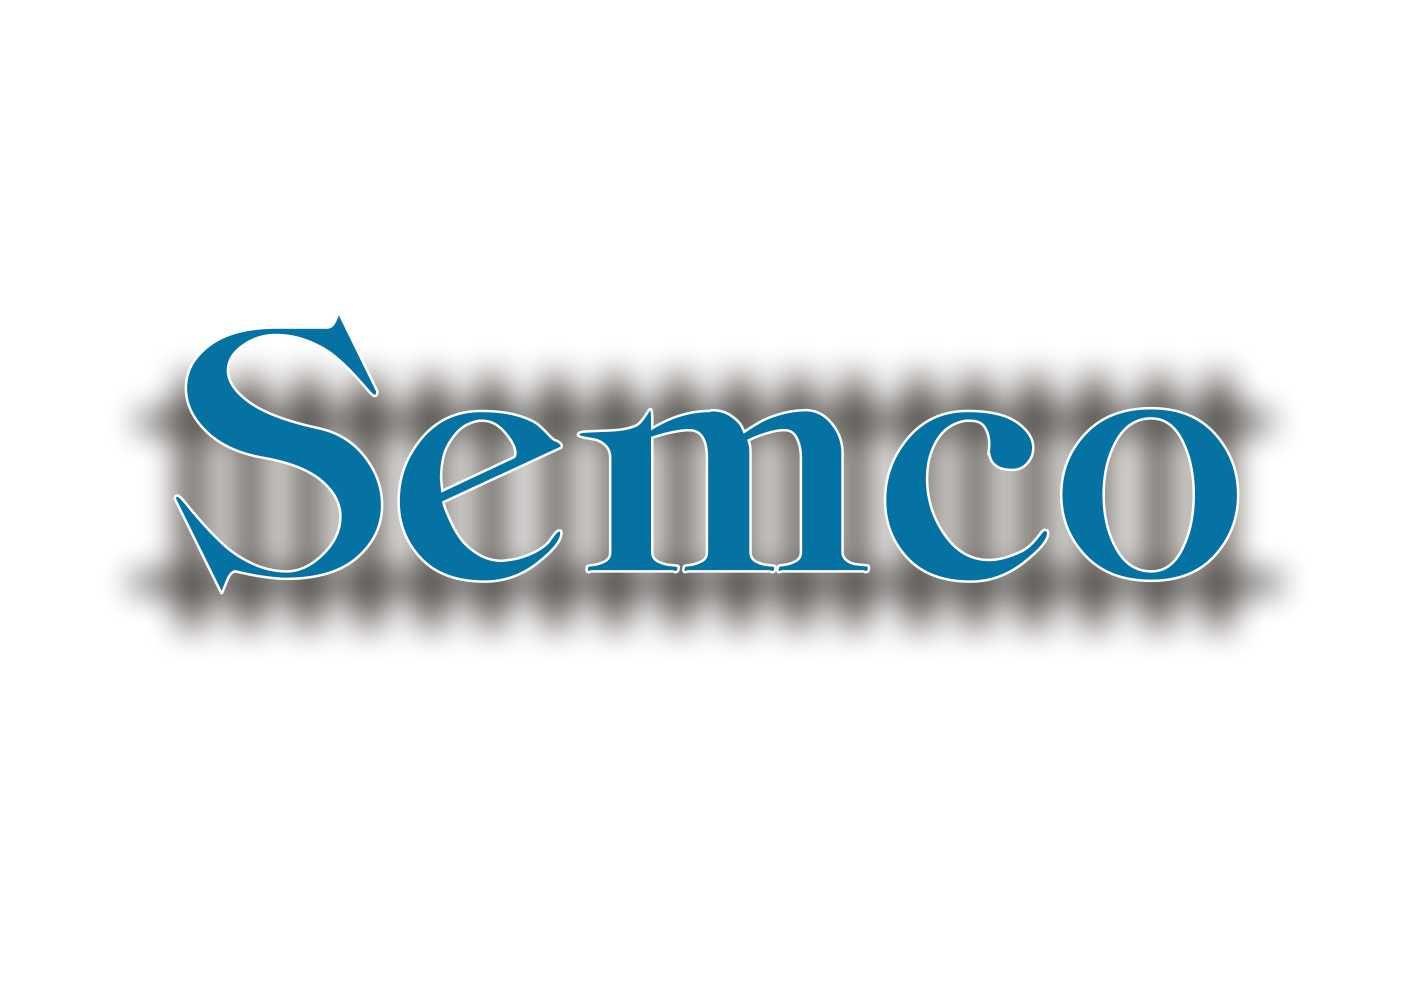 Semco Logo - Elegant, Serious, Industrial Logo Design for Semco Group or Semco by ...